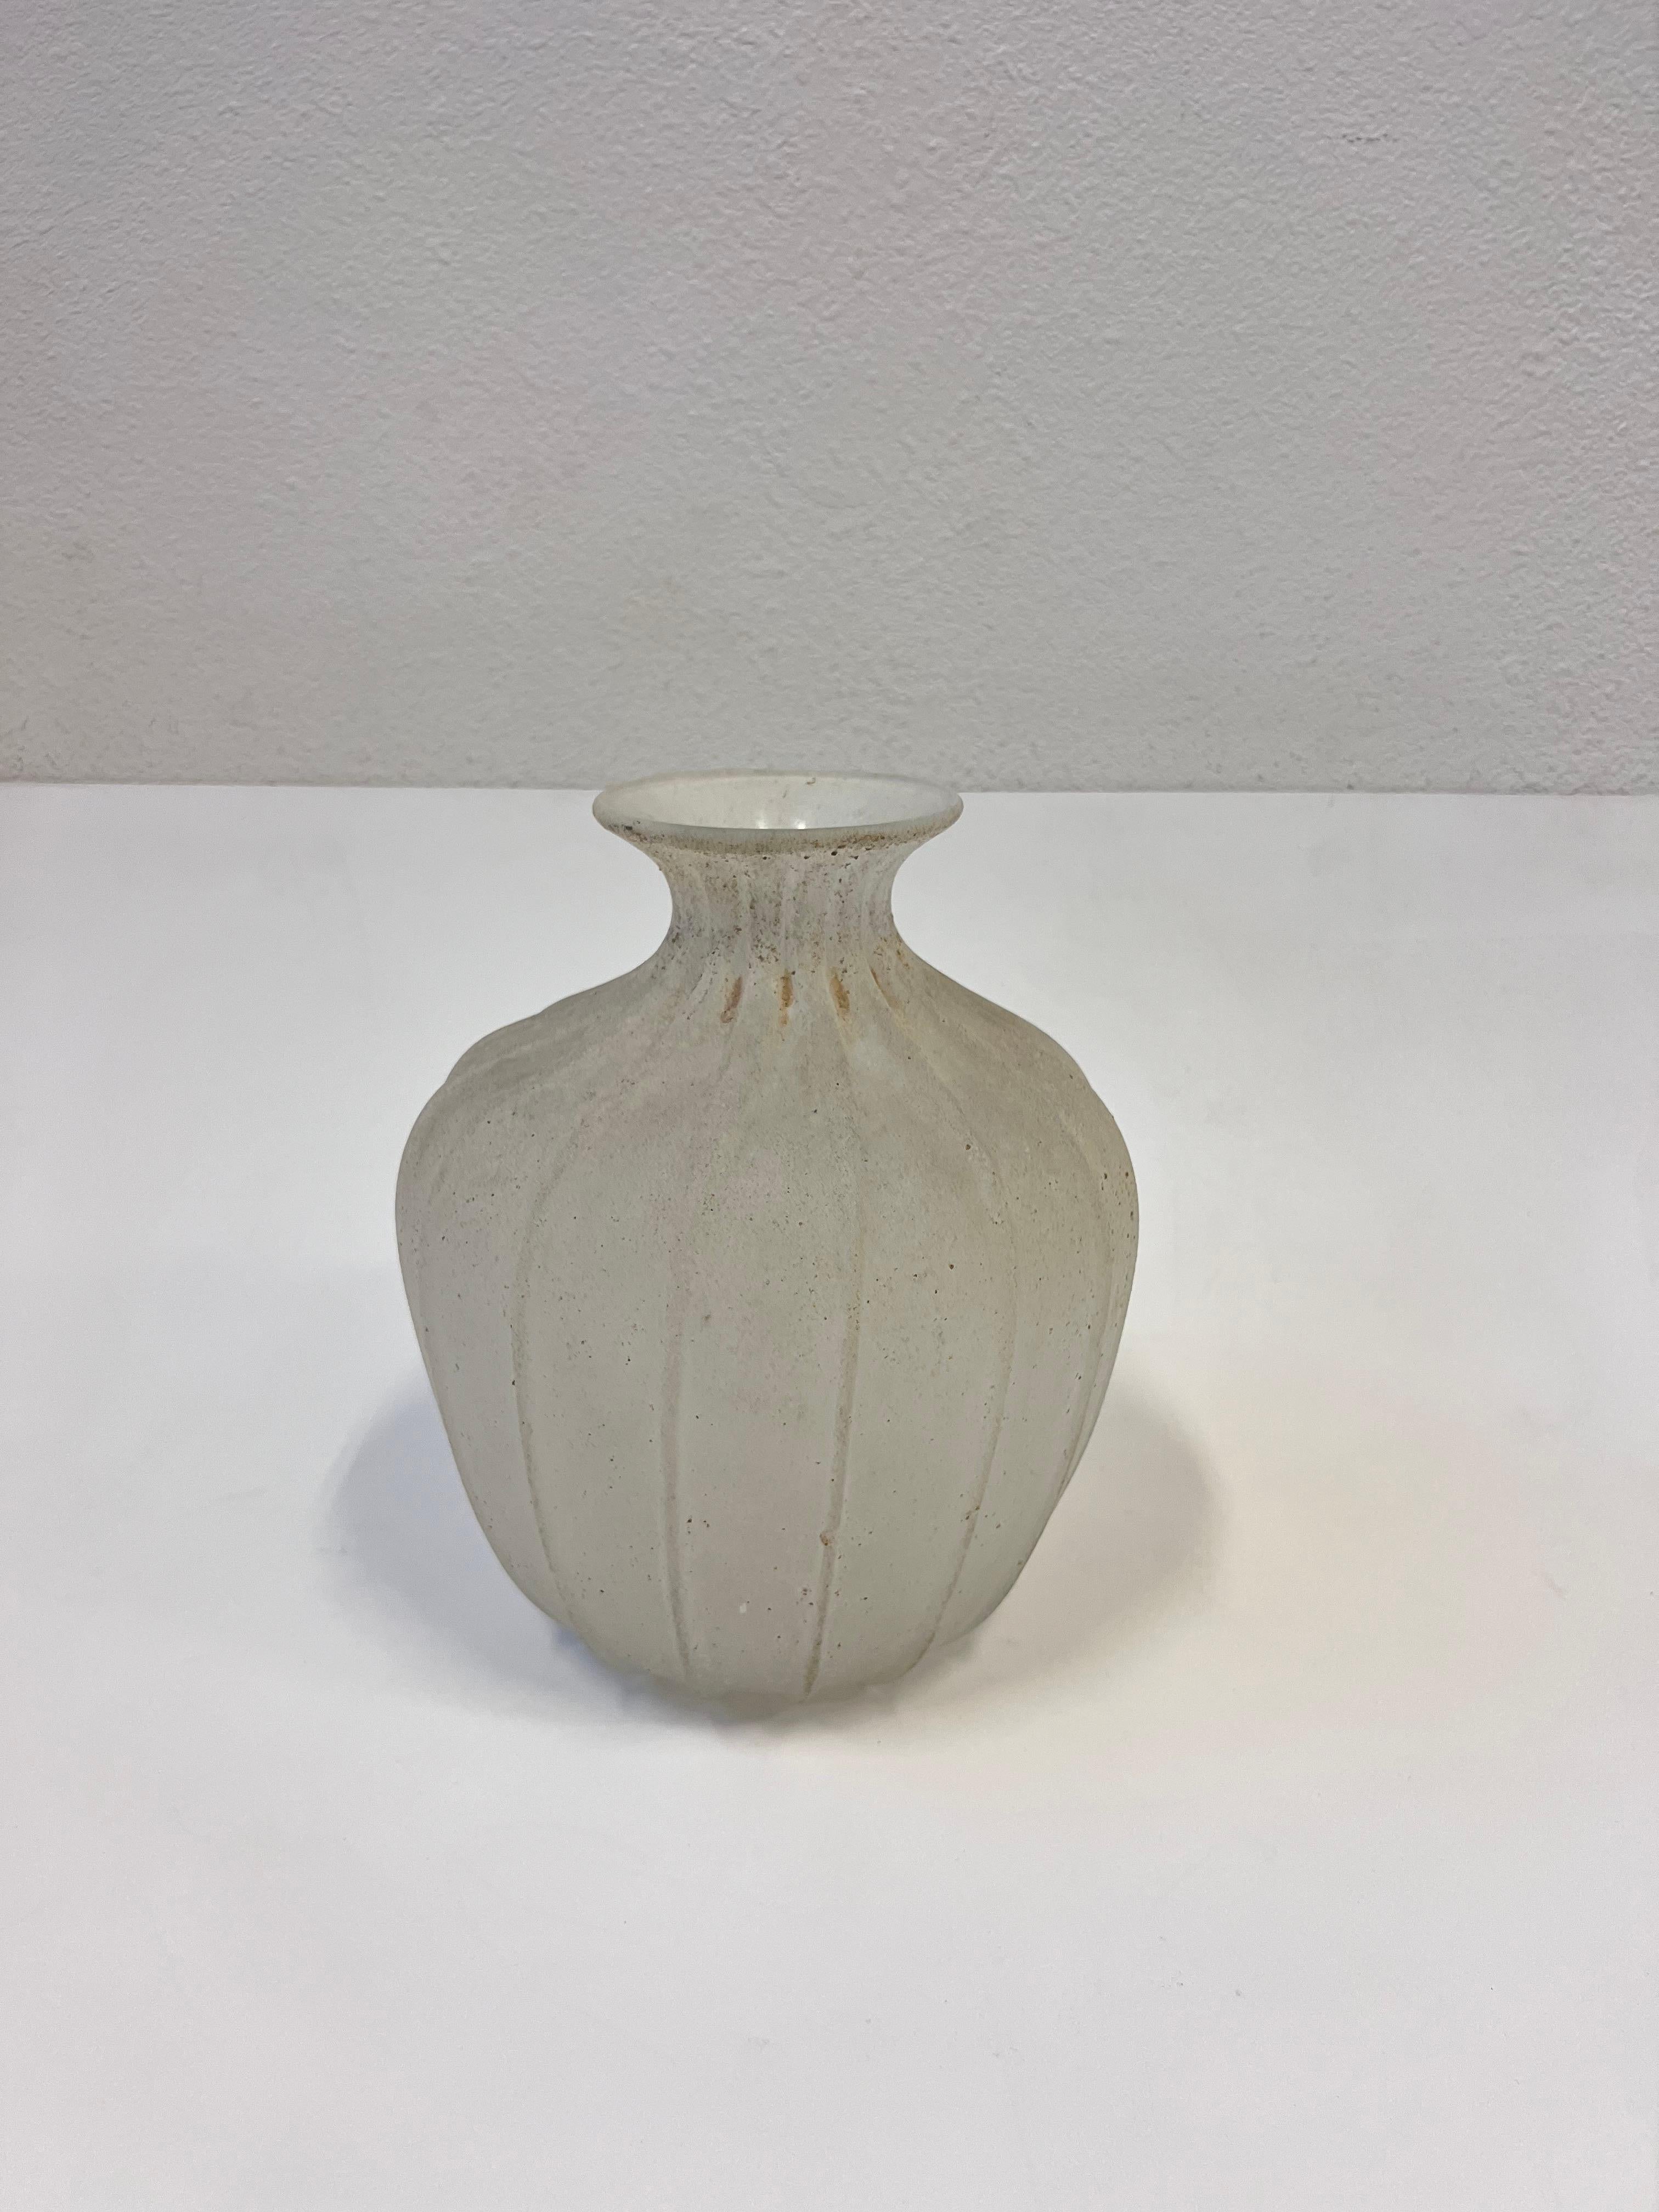 Vase italien en verre Murano de Seguso Vetri d'Arte, datant des années 1980. 

Verre de Murano soufflé à la main avec une finition de texture rugueuse. Le vase est marqué Seguso Vetri d'Arte. 

Dim : 11